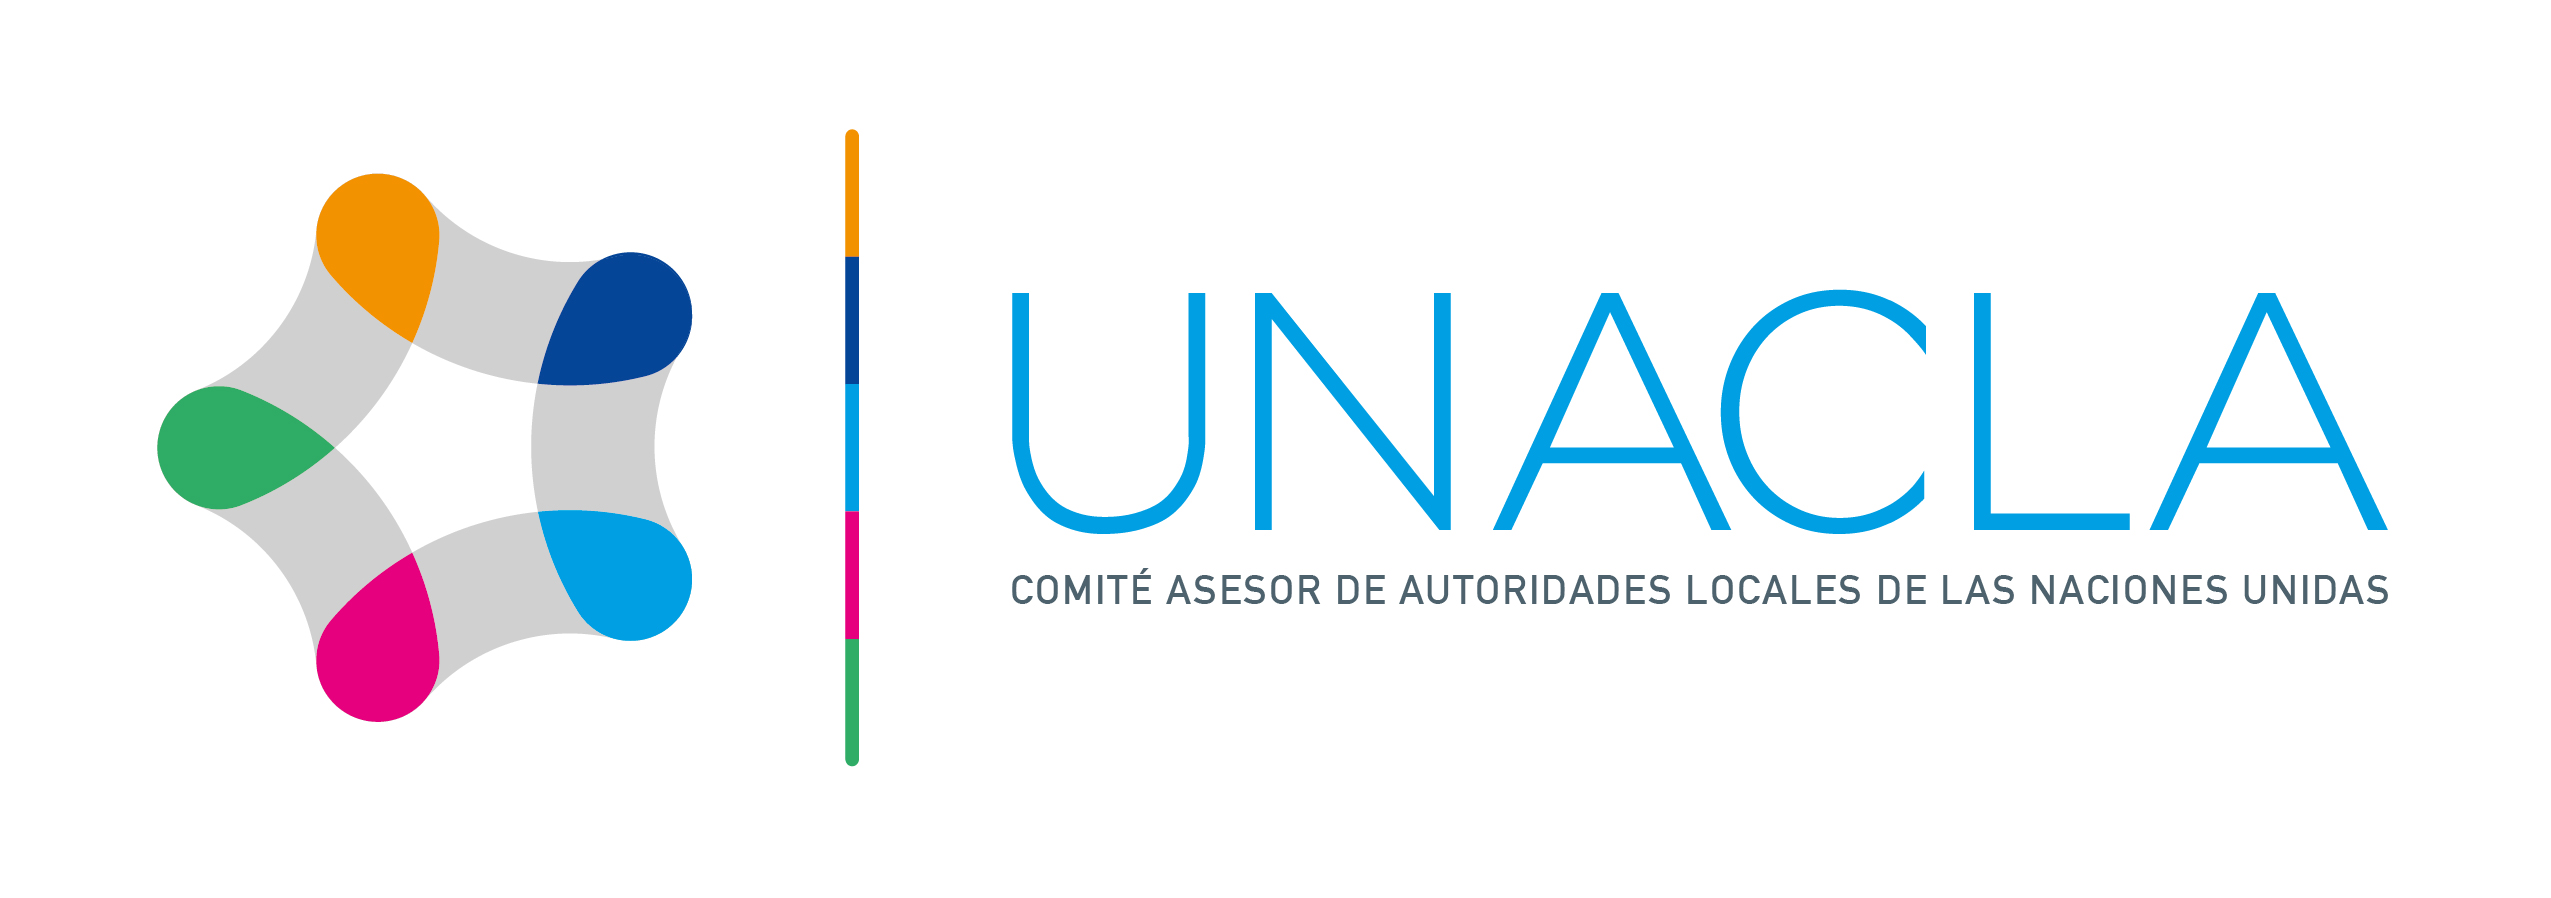 UNACLA - Comité Asesor de Autoridades Locales de Naciones Unidas